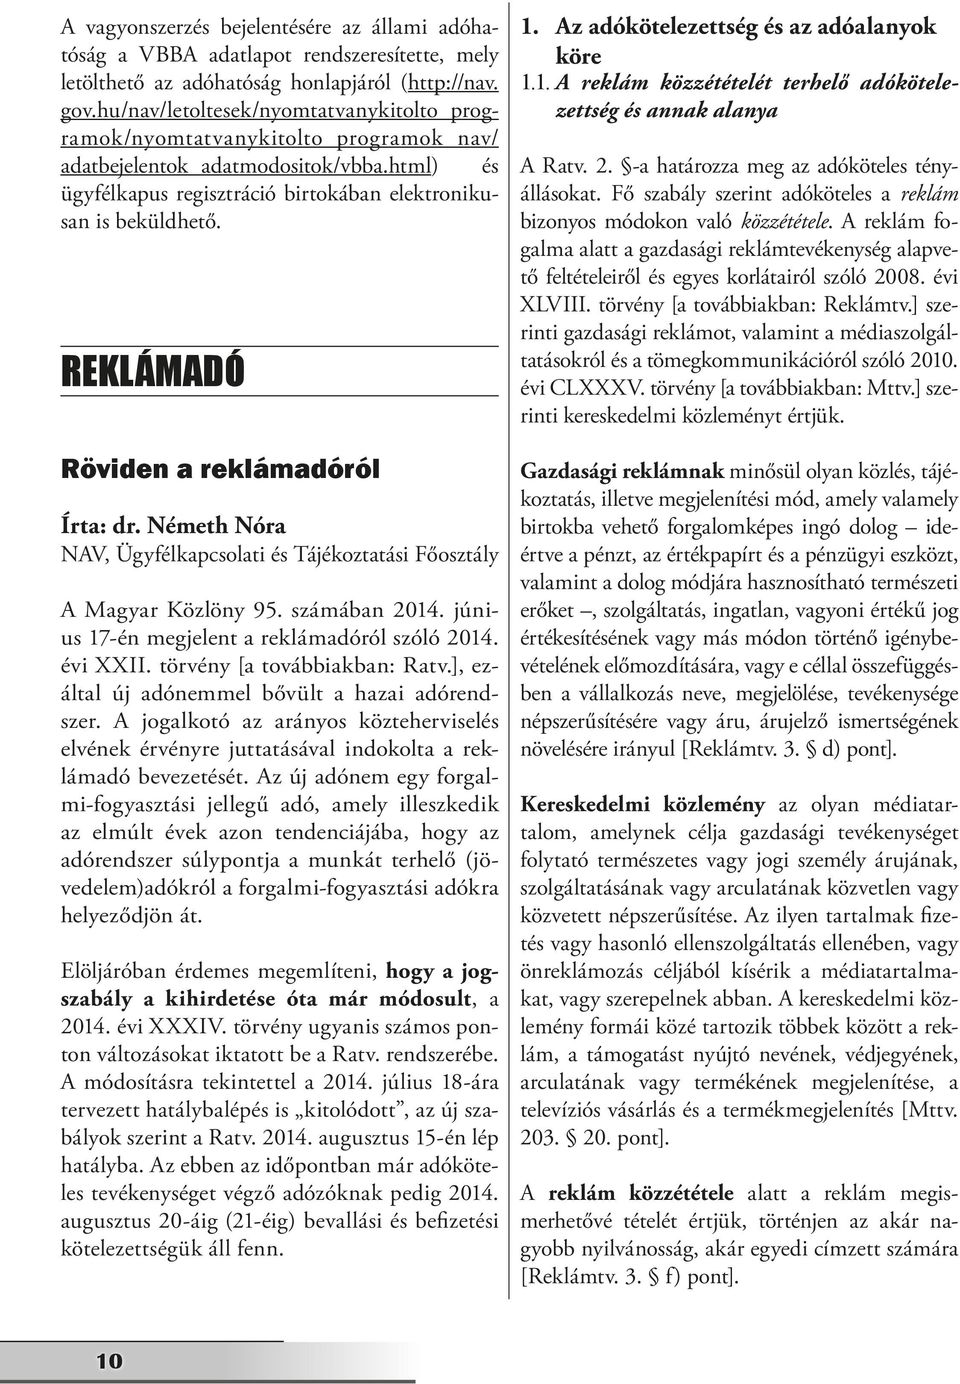 REKLÁMADÓ Röviden a reklámadóról Írta: dr. Németh Nóra NAV, Ügyfélkapcsolati és Tájékoztatási Főosztály A Magyar Közlöny 95. számában 2014. június 17-én megjelent a reklámadóról szóló 2014. évi XXII.